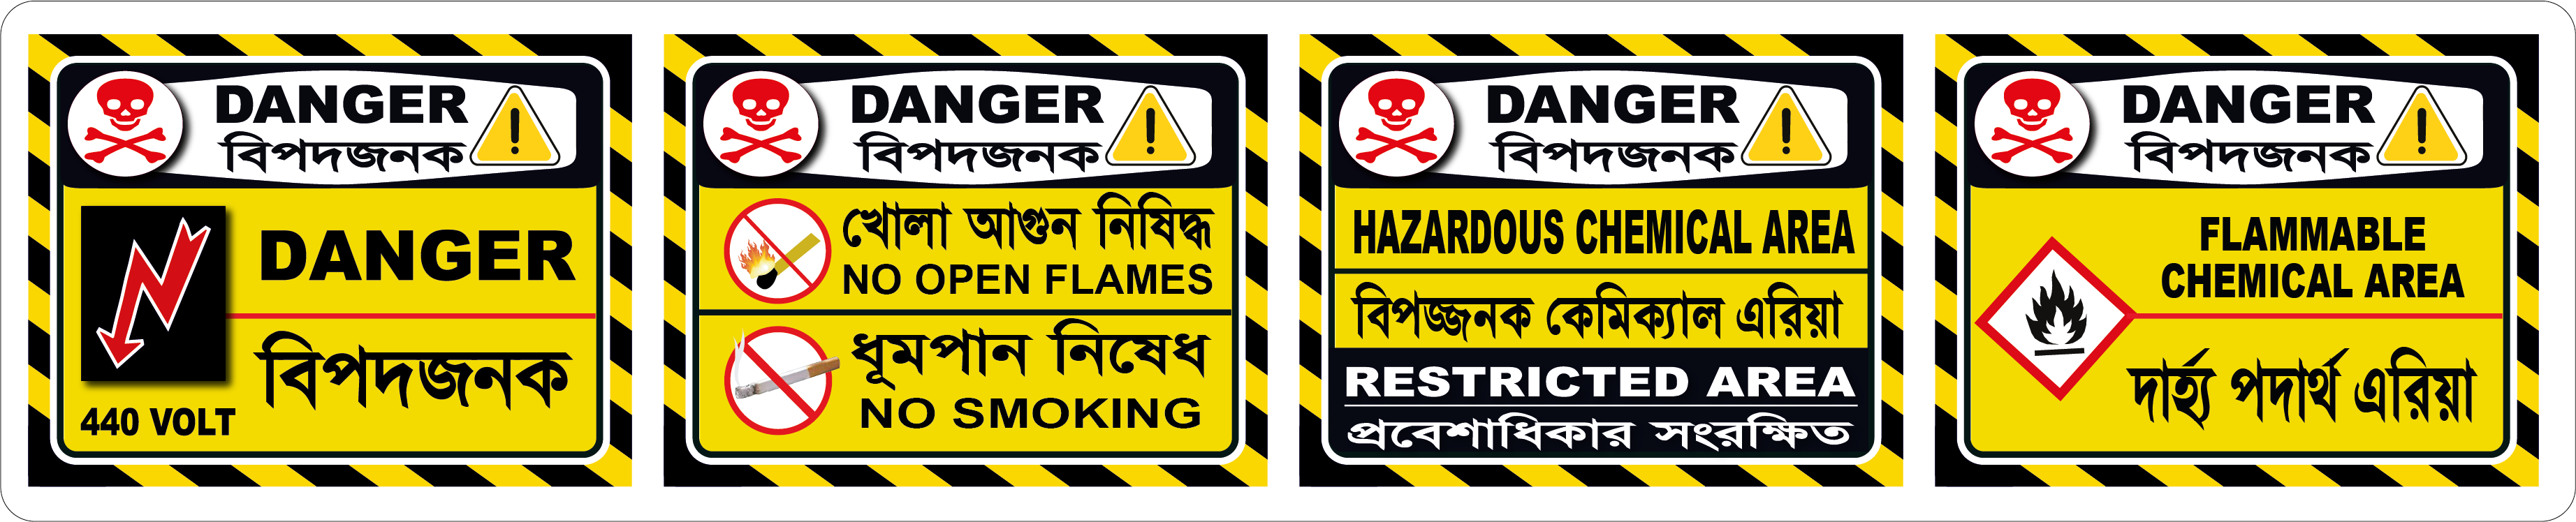 Bilingual Danger signs3